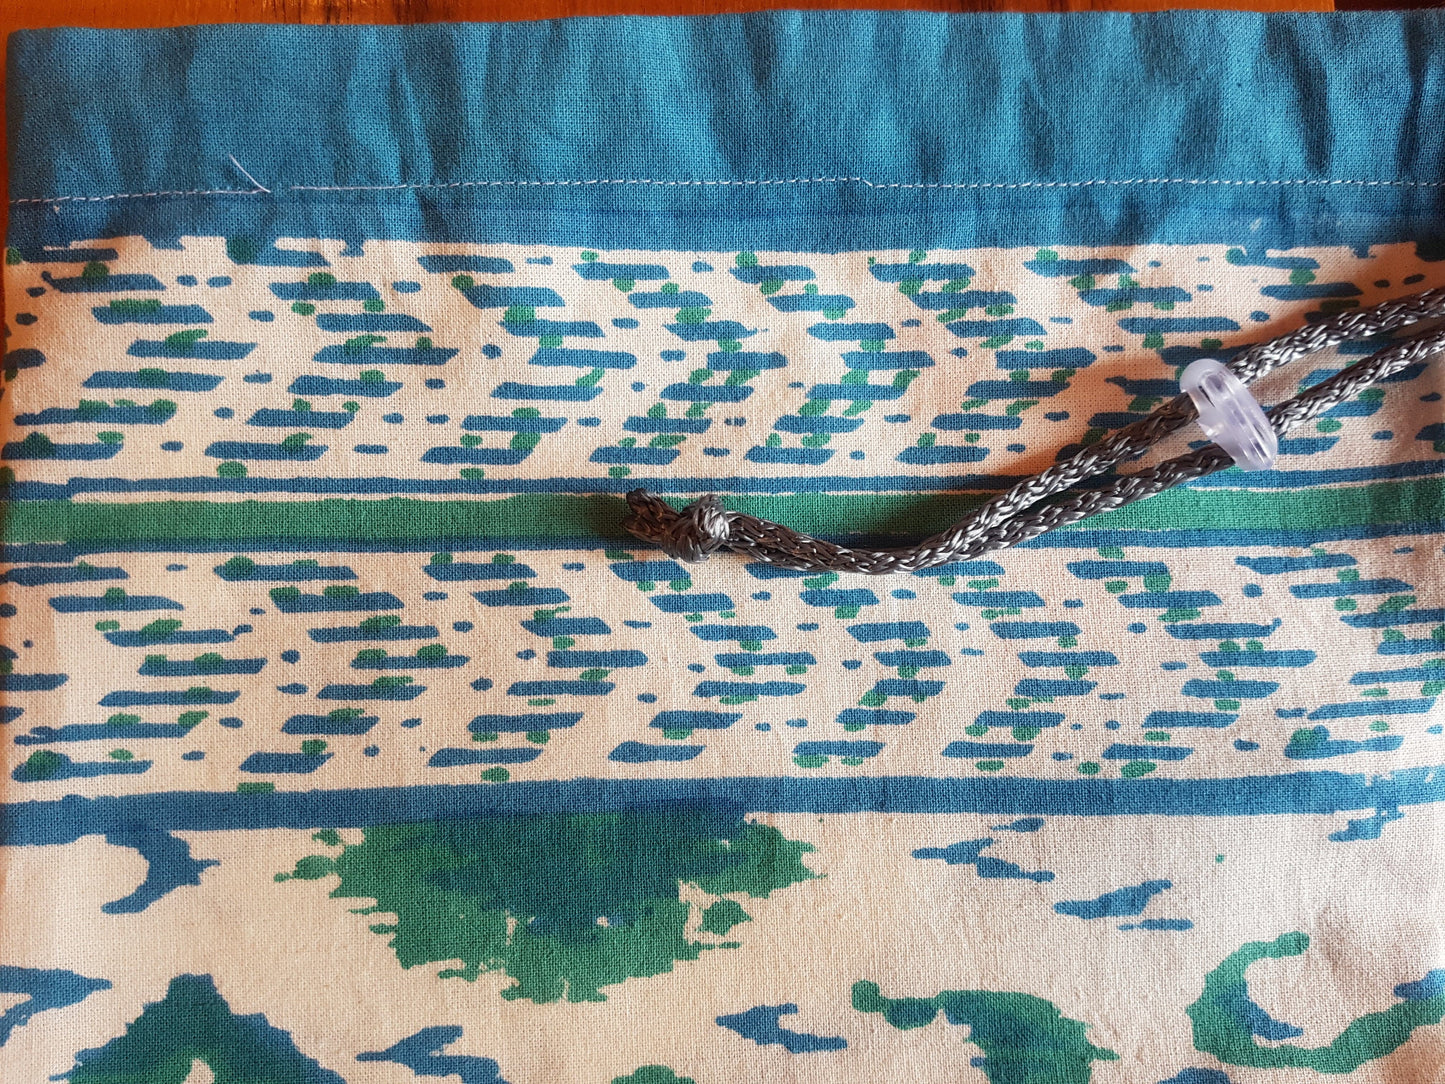 Funda para tapete de yoga 100% algodón, estampada a mano con patrones geométricos en color verde y azul agua. Hecha en la India.